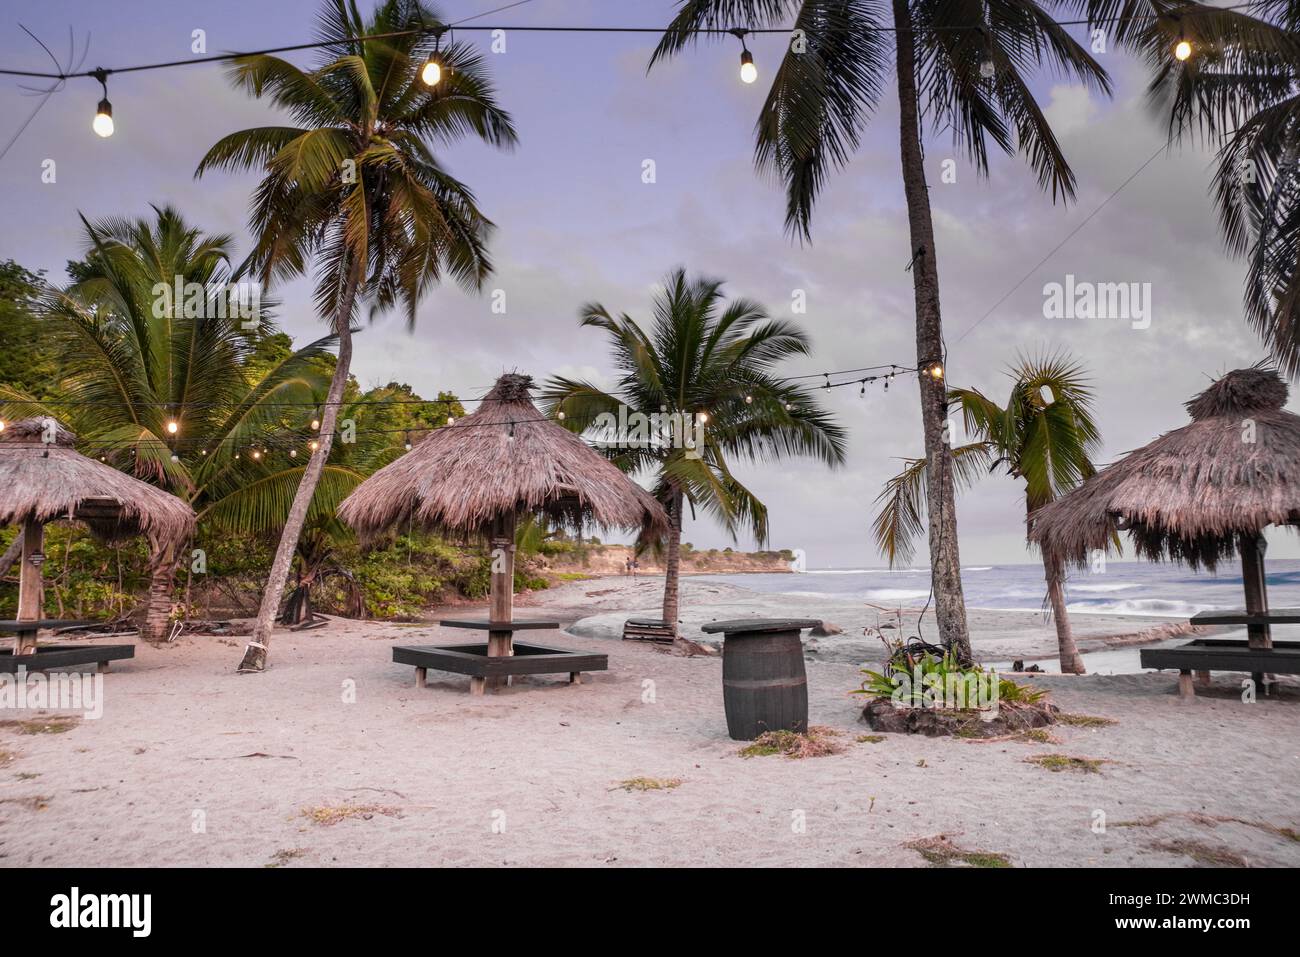 Idílico bar de playa caribeño al atardecer - Piaye, Santa Lucía (Indias Occidentales) Foto de stock